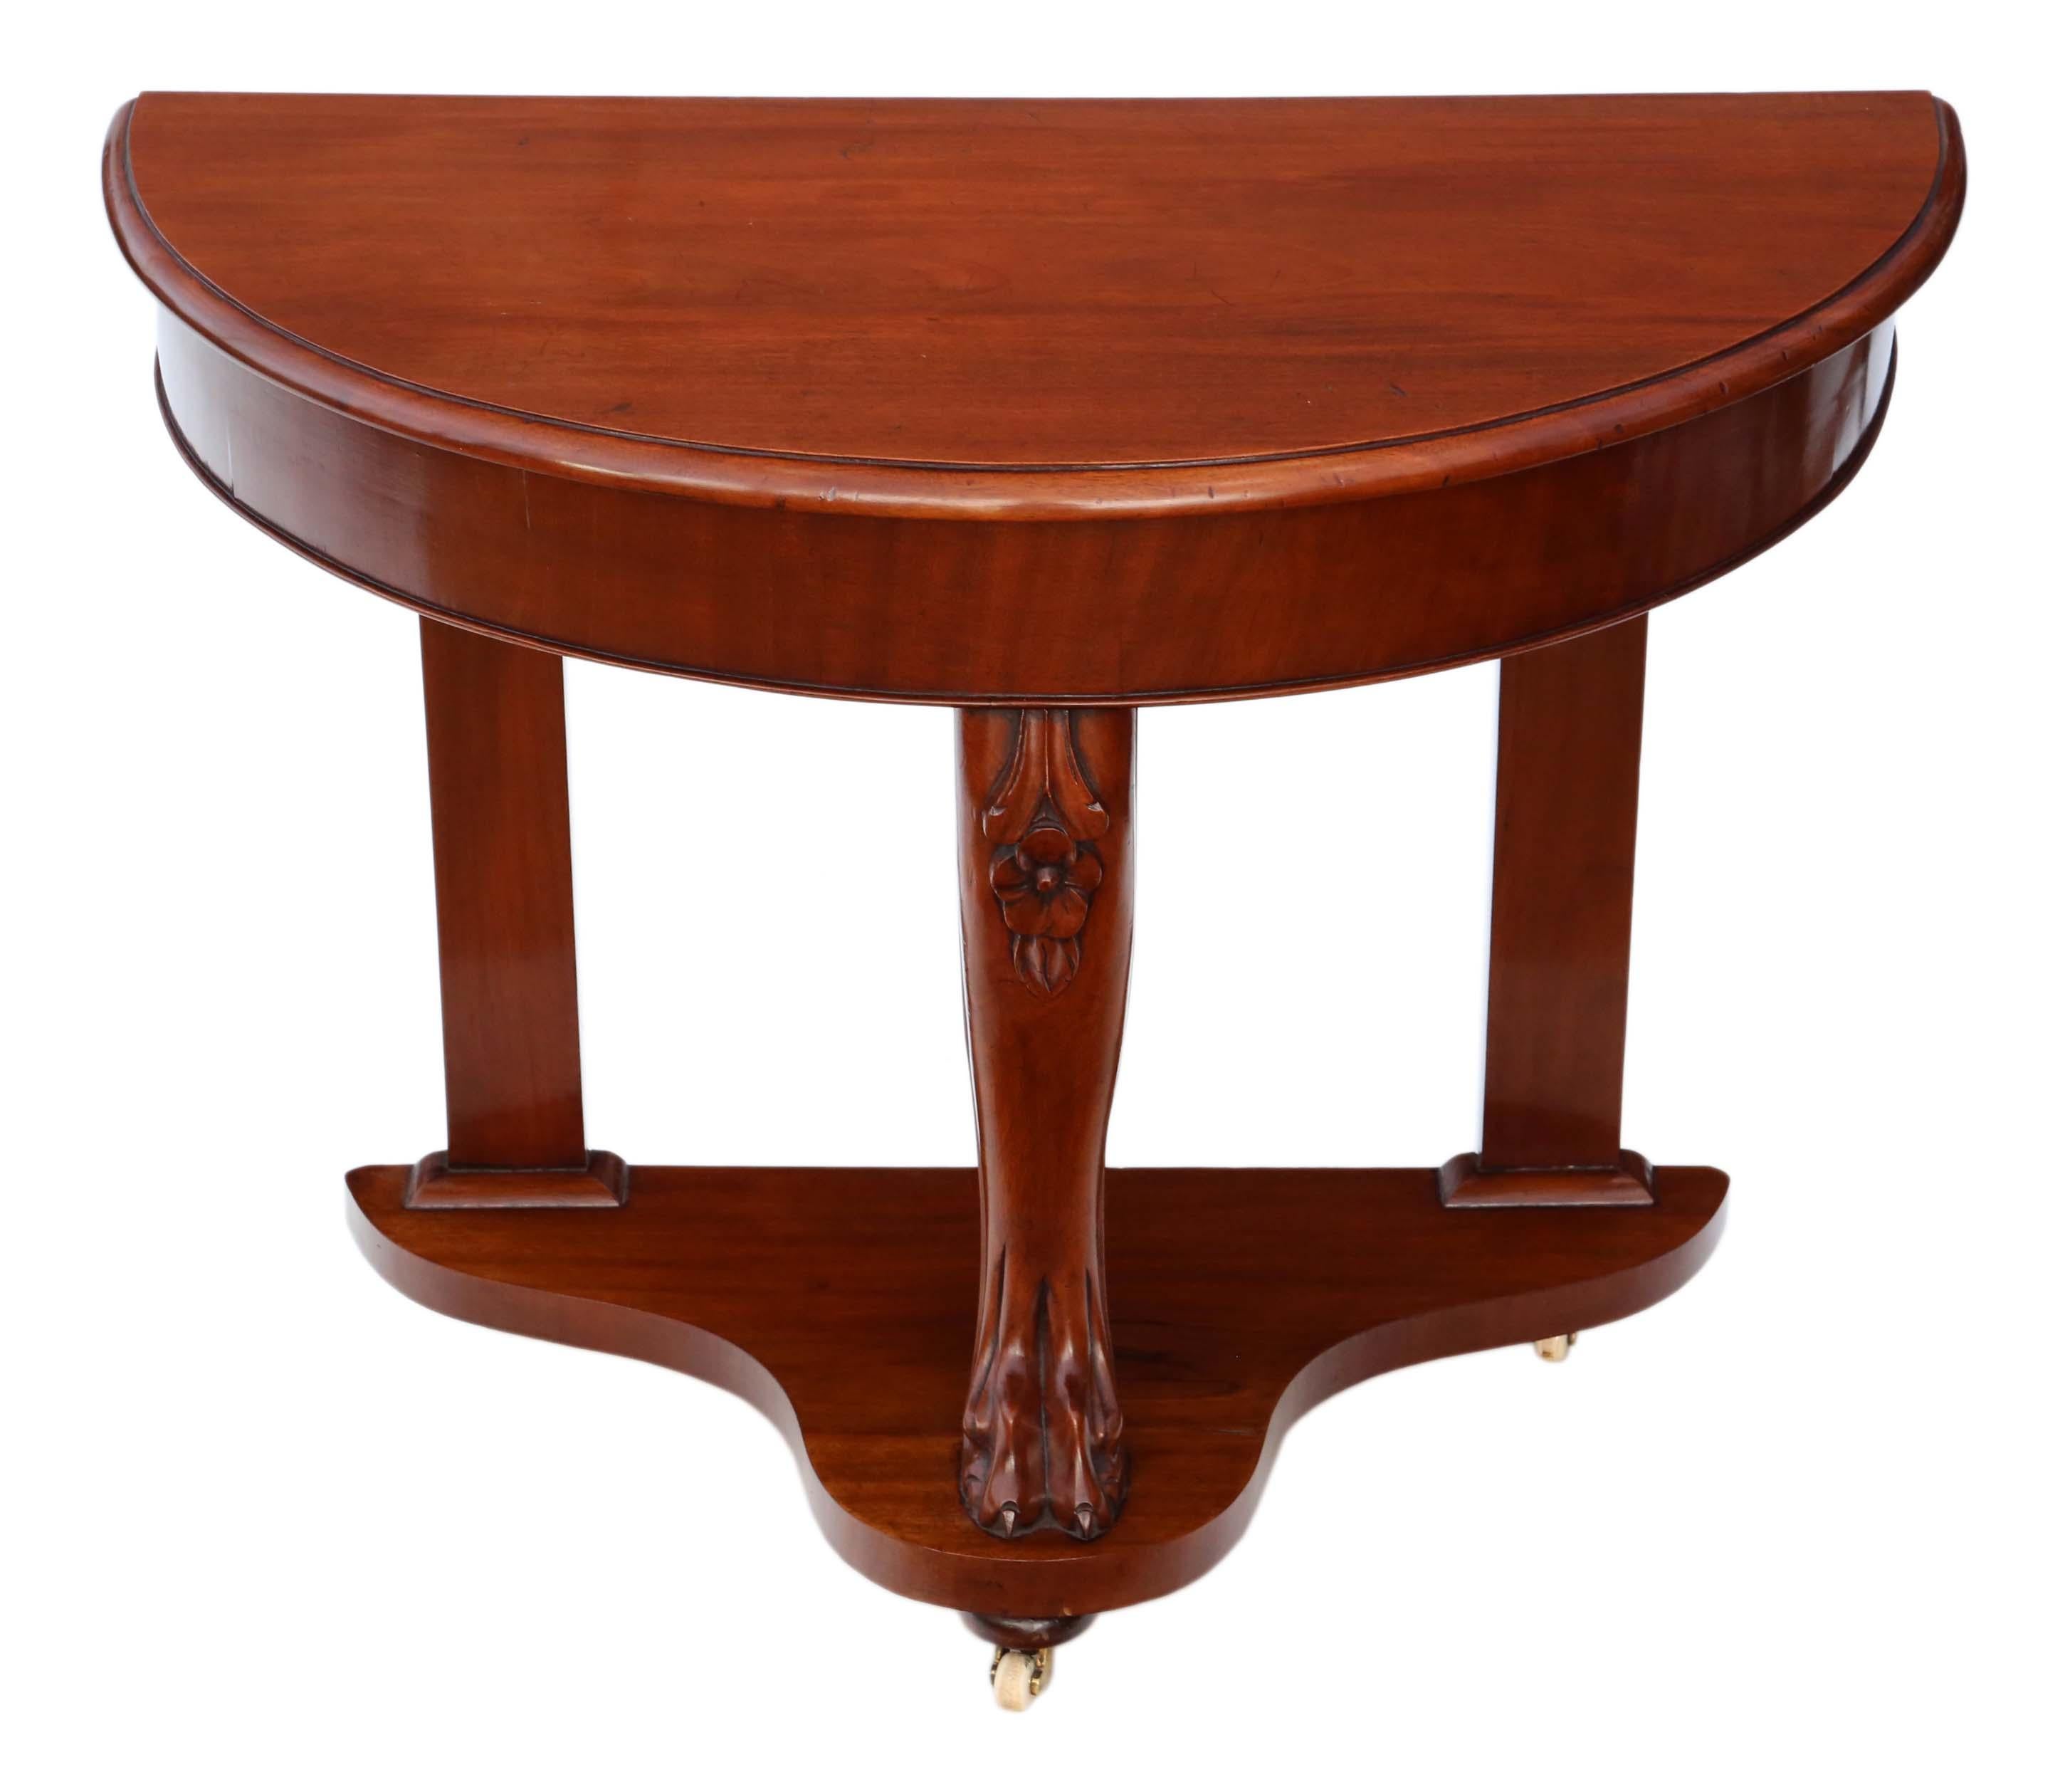 Ancienne console victorienne circa 1890 en acajou démilune.
Il s'agit d'une très belle table qui a été entièrement restaurée à un niveau élevé.
Solide, sans joints détachés. Pas de vermoulure. Roulettes en laiton et en céramique. Bien meilleure